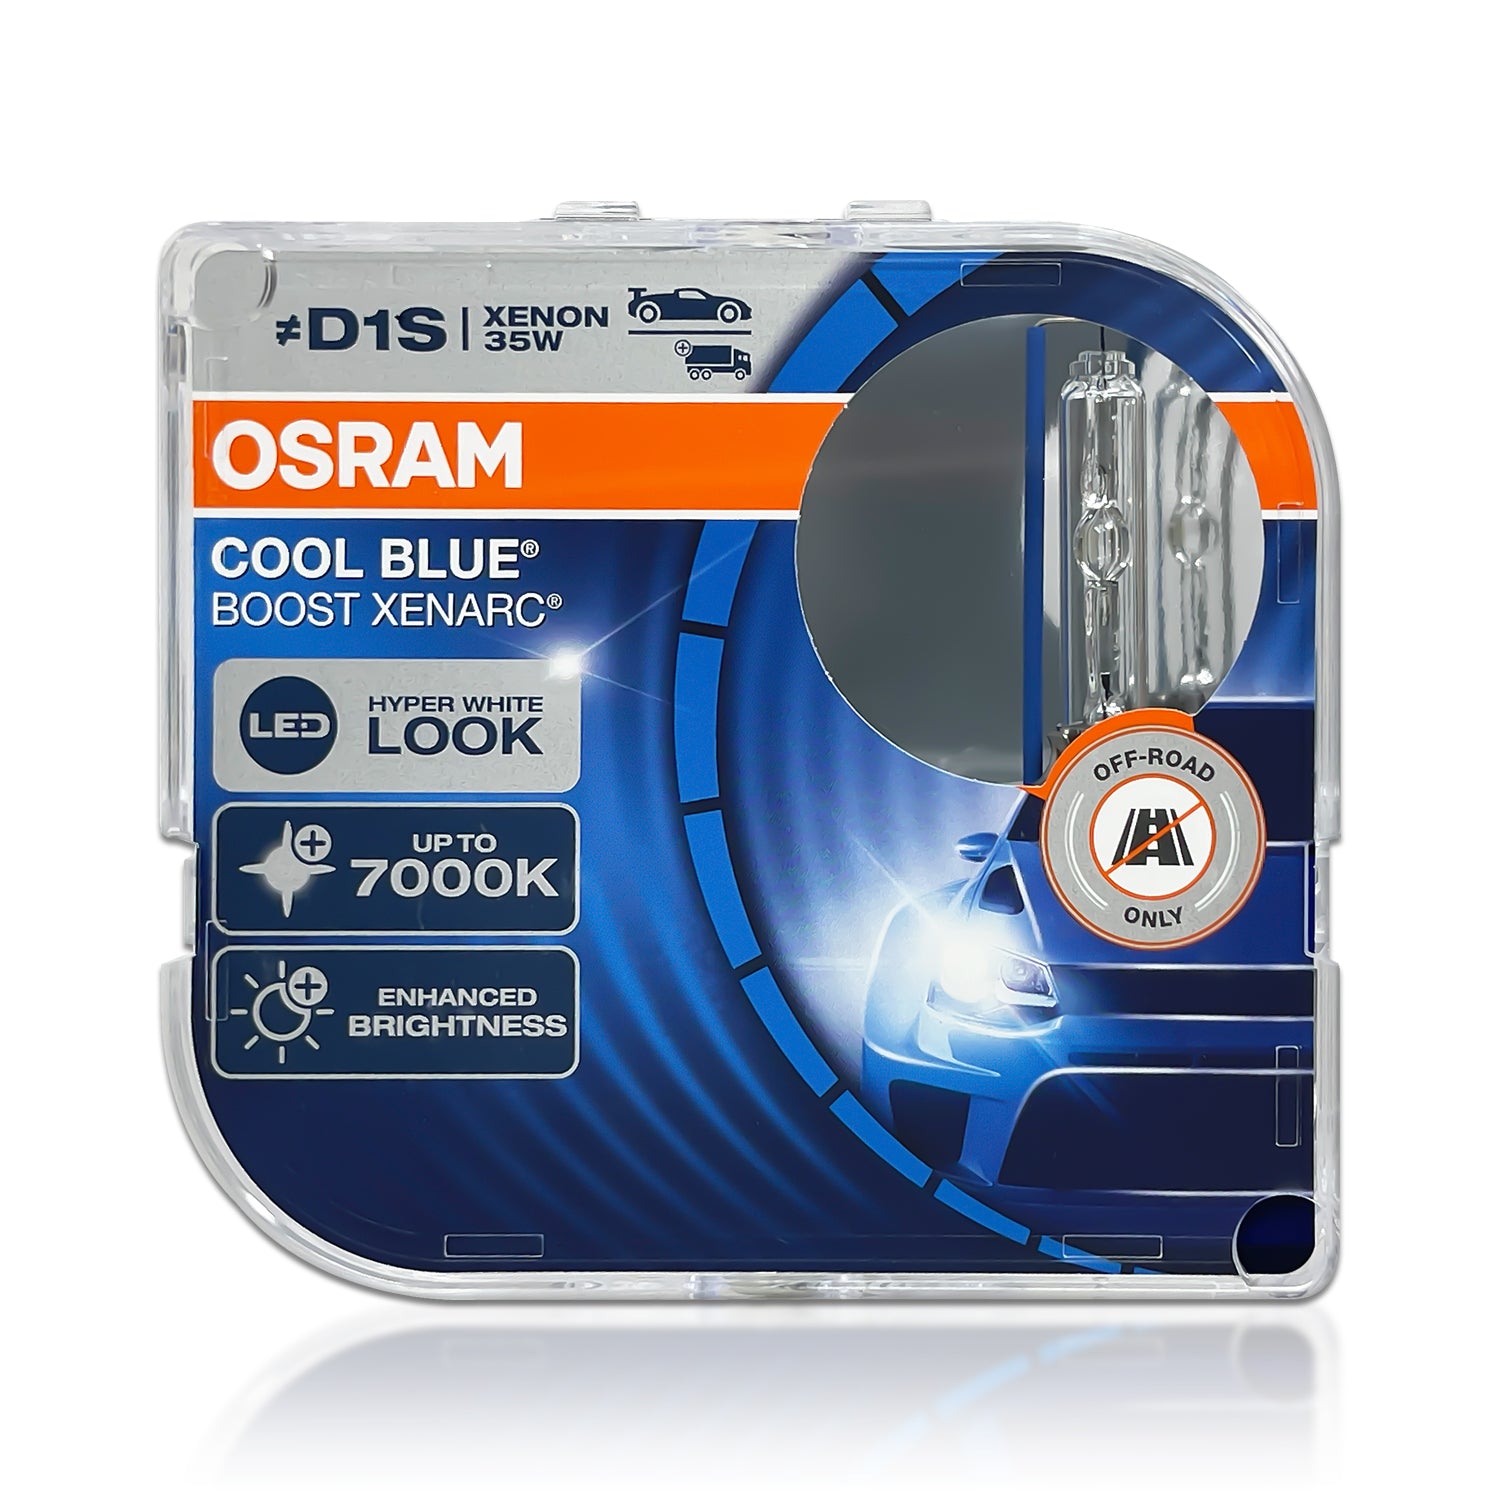 D1S Osram XENARC 66140CBB HID Bulbs